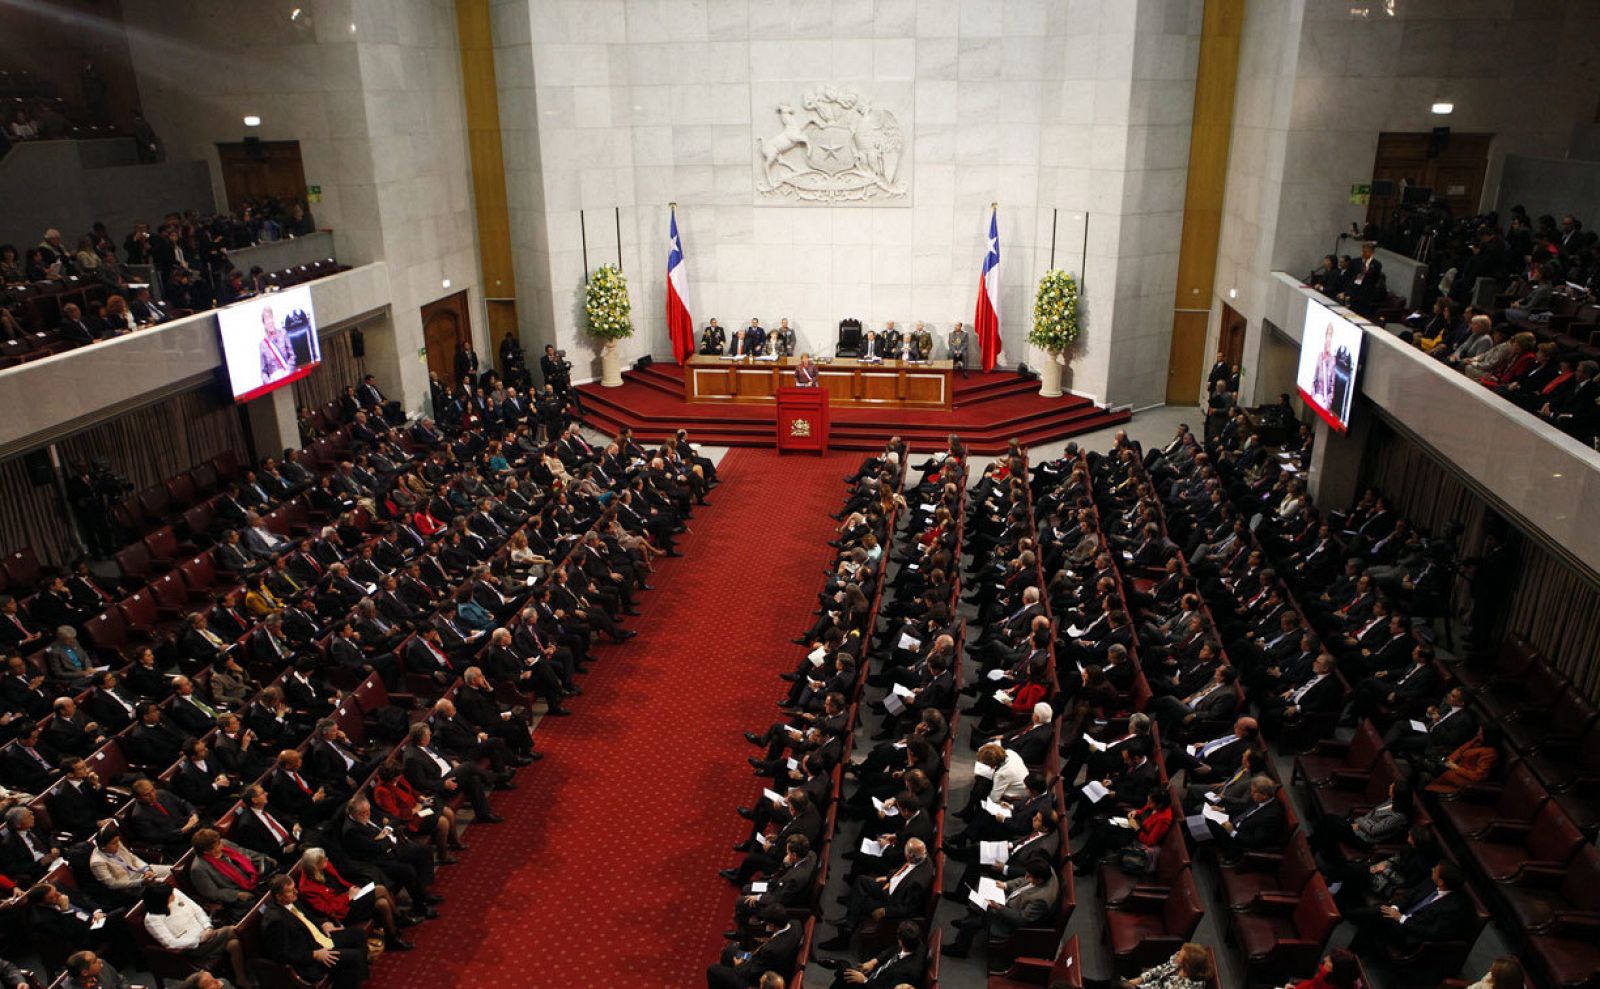 El parlamento chileno en una imagen de archivo durante la presidencia de Michelle Bachelet